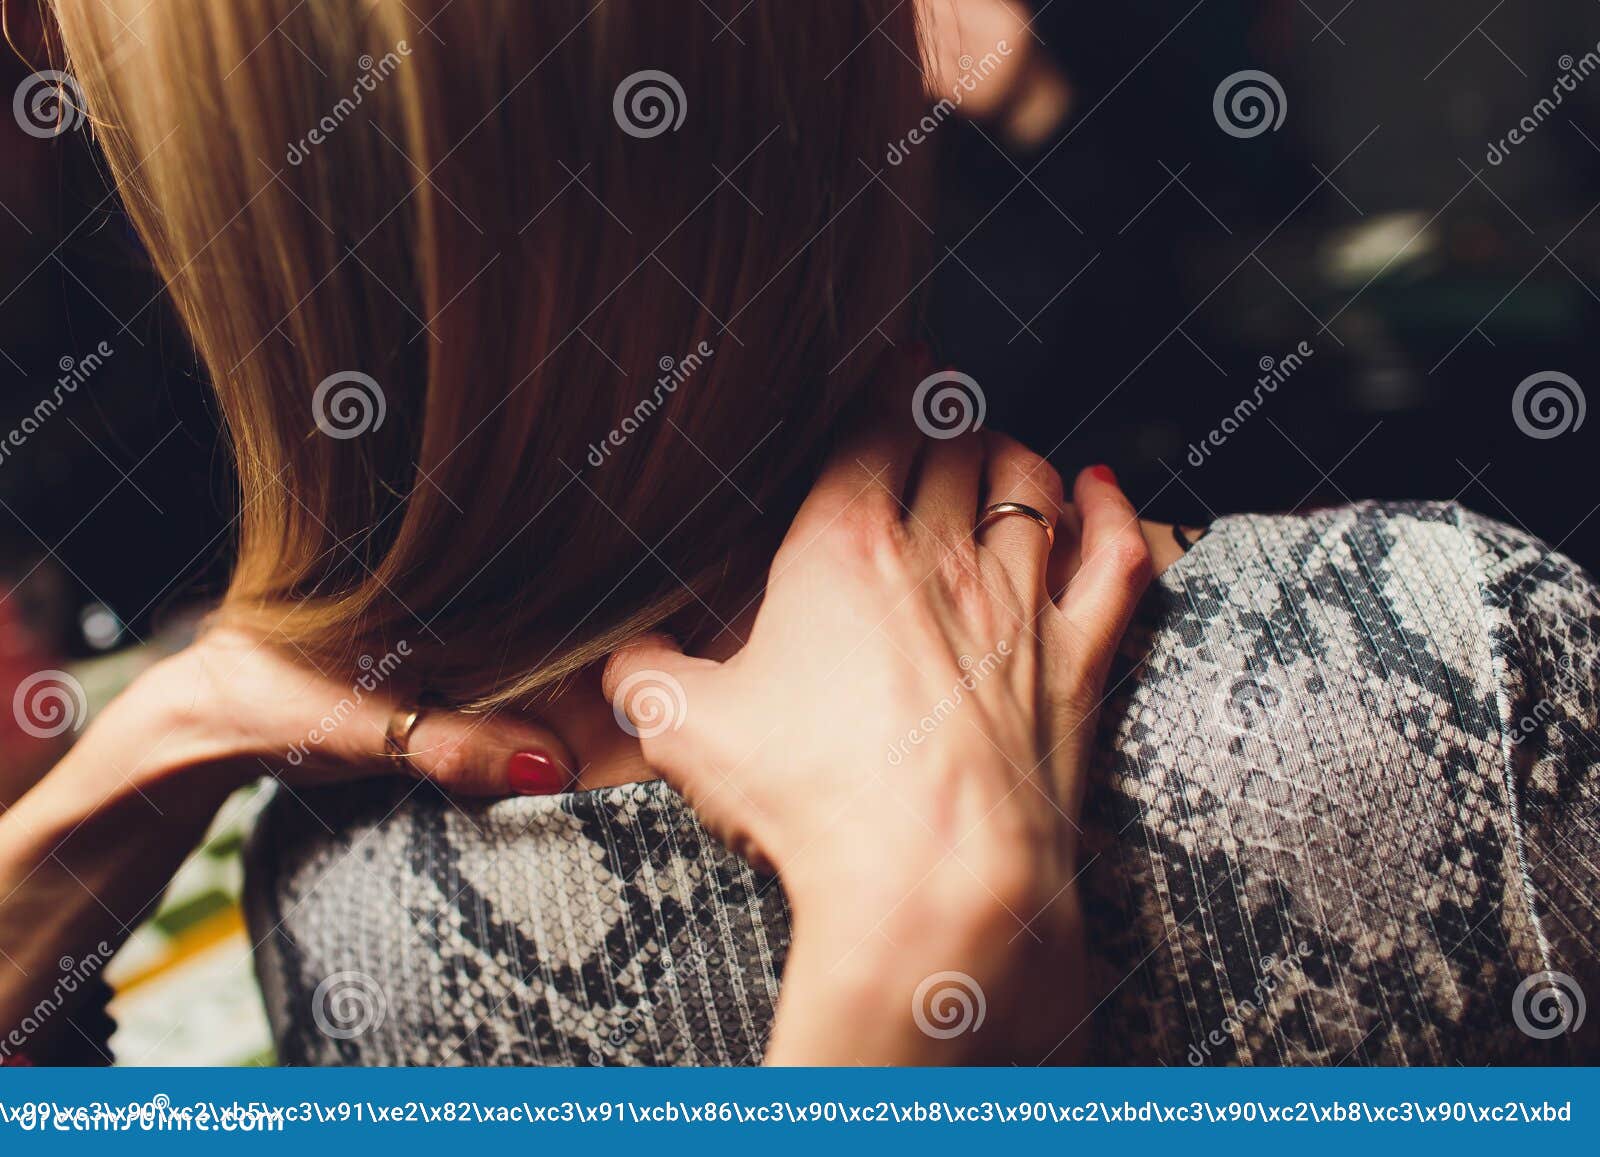 Lesbian Massage Pics